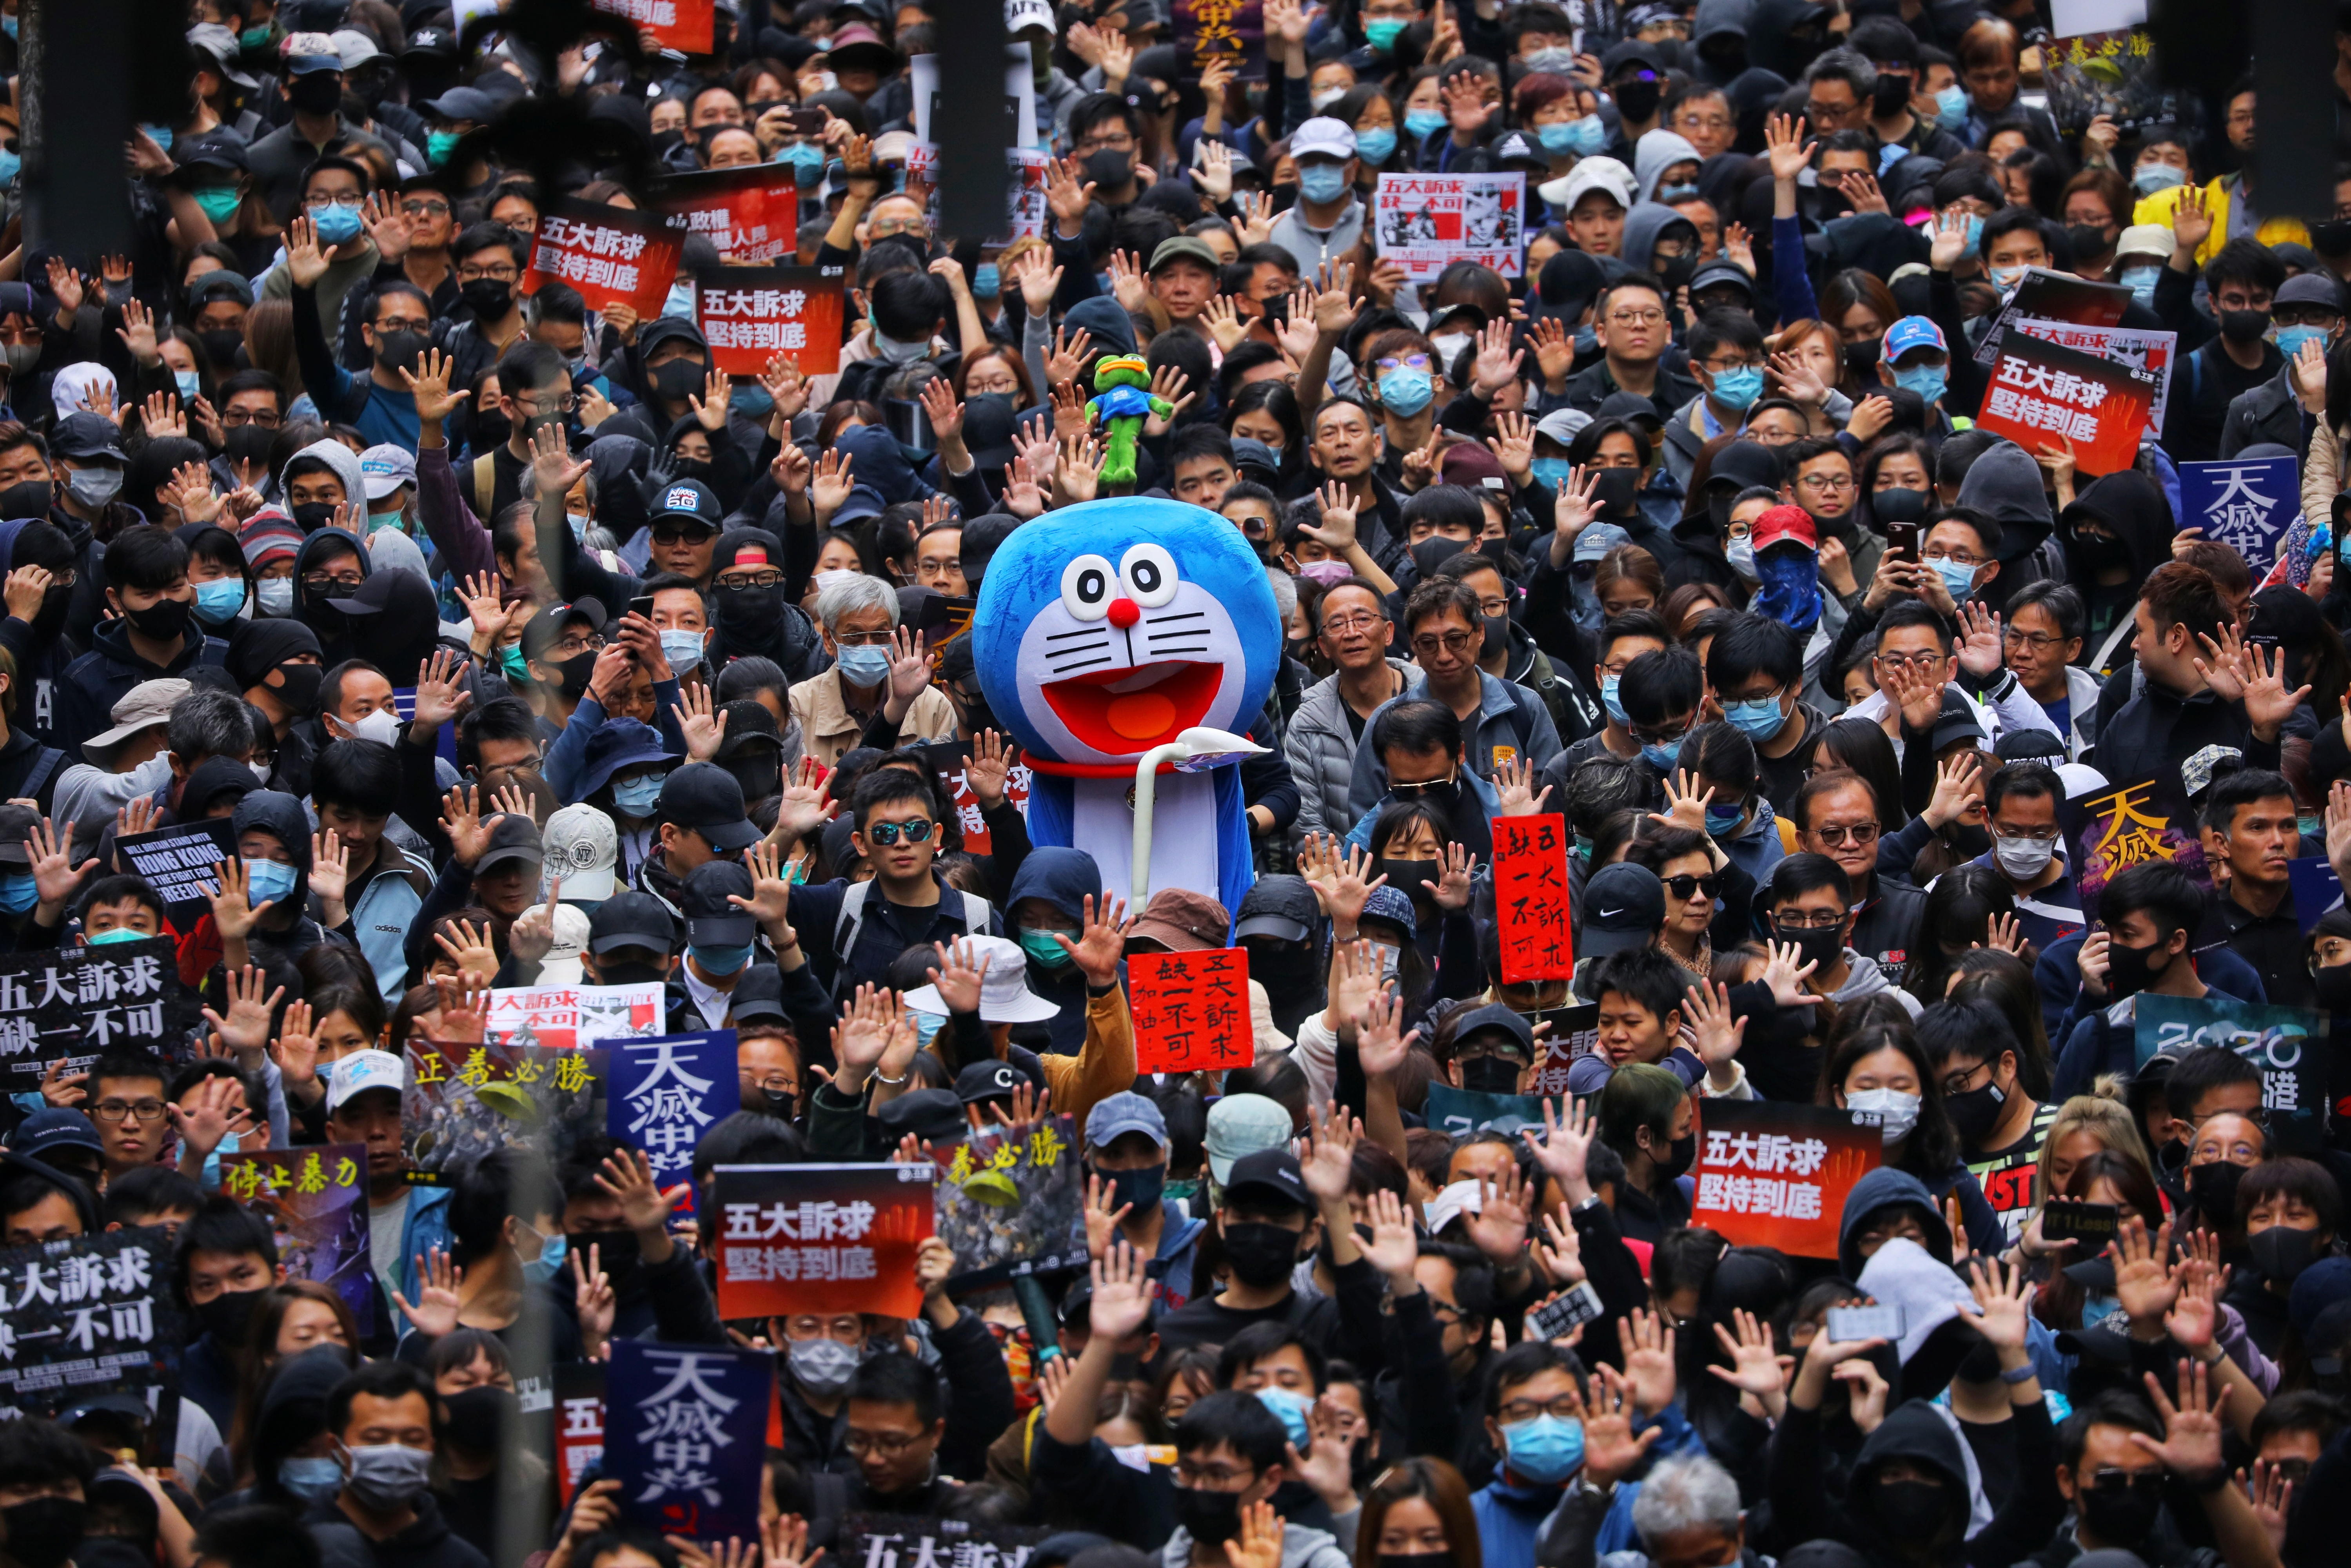 El 2020 llega a Hong Kong entre protestas y gases lacrimógenos